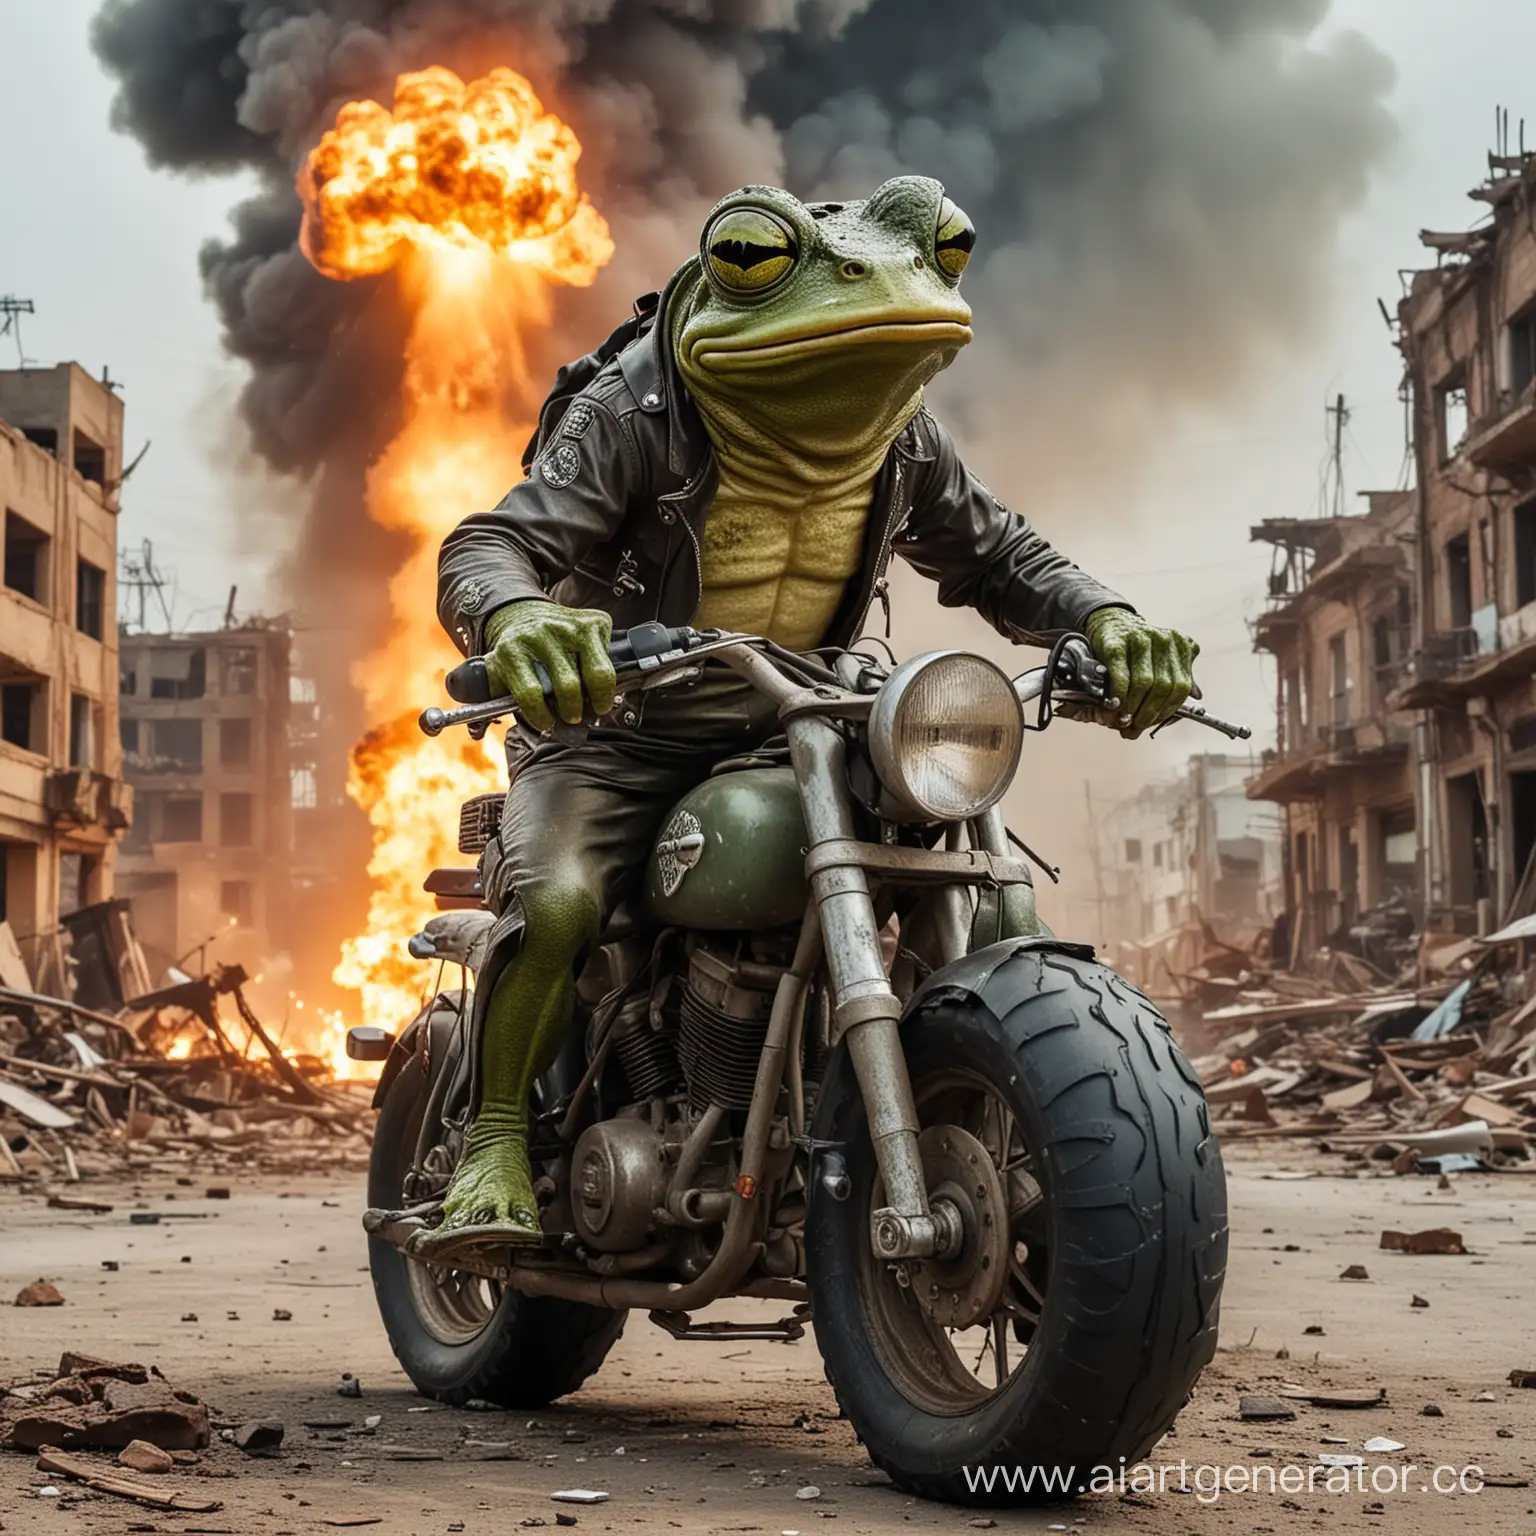 Злая жаба рокер на мотоцикле
Ядерный взрыв 
руины города